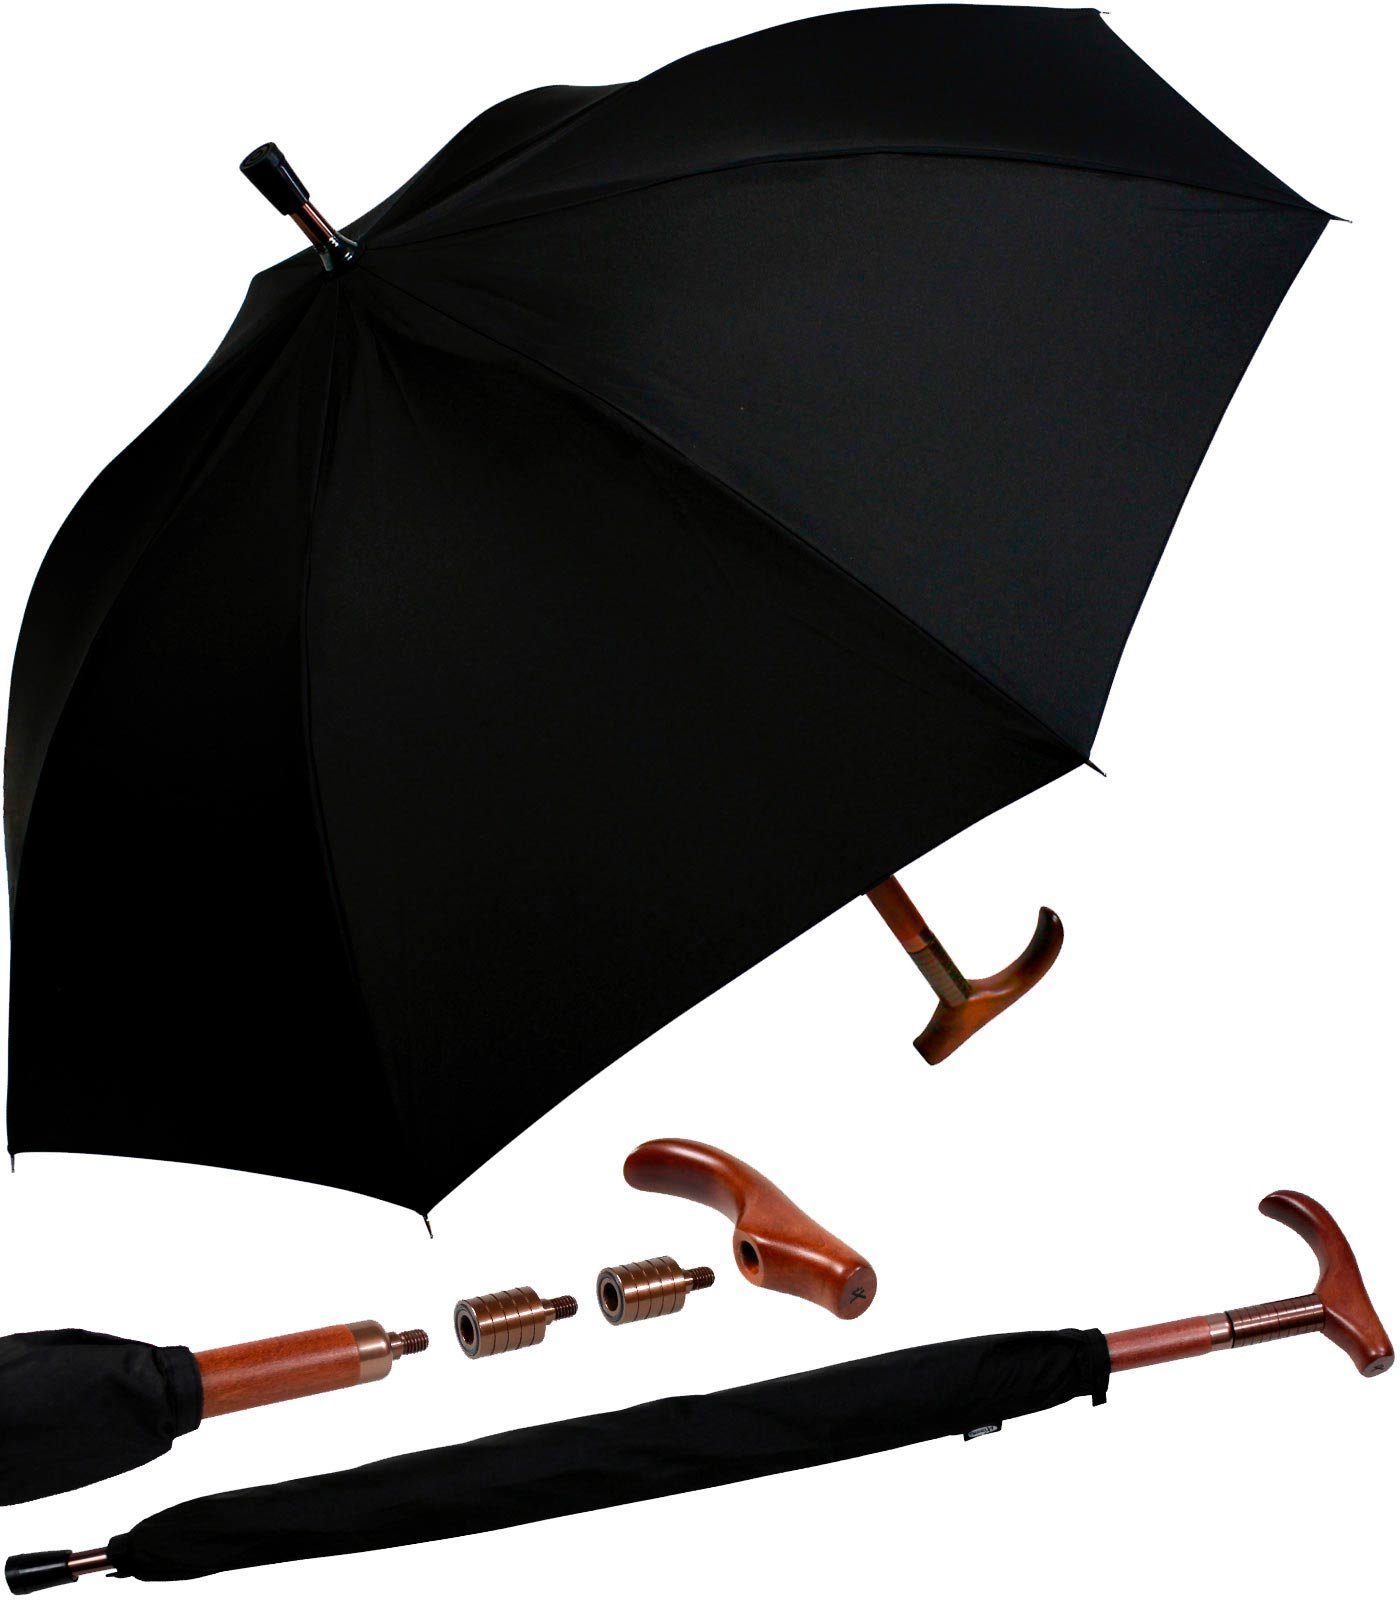 Langregenschirm Stützschirm stabil, iX-brella schwarz höhenverstellbar extrem-stabil Holzgriff sehr